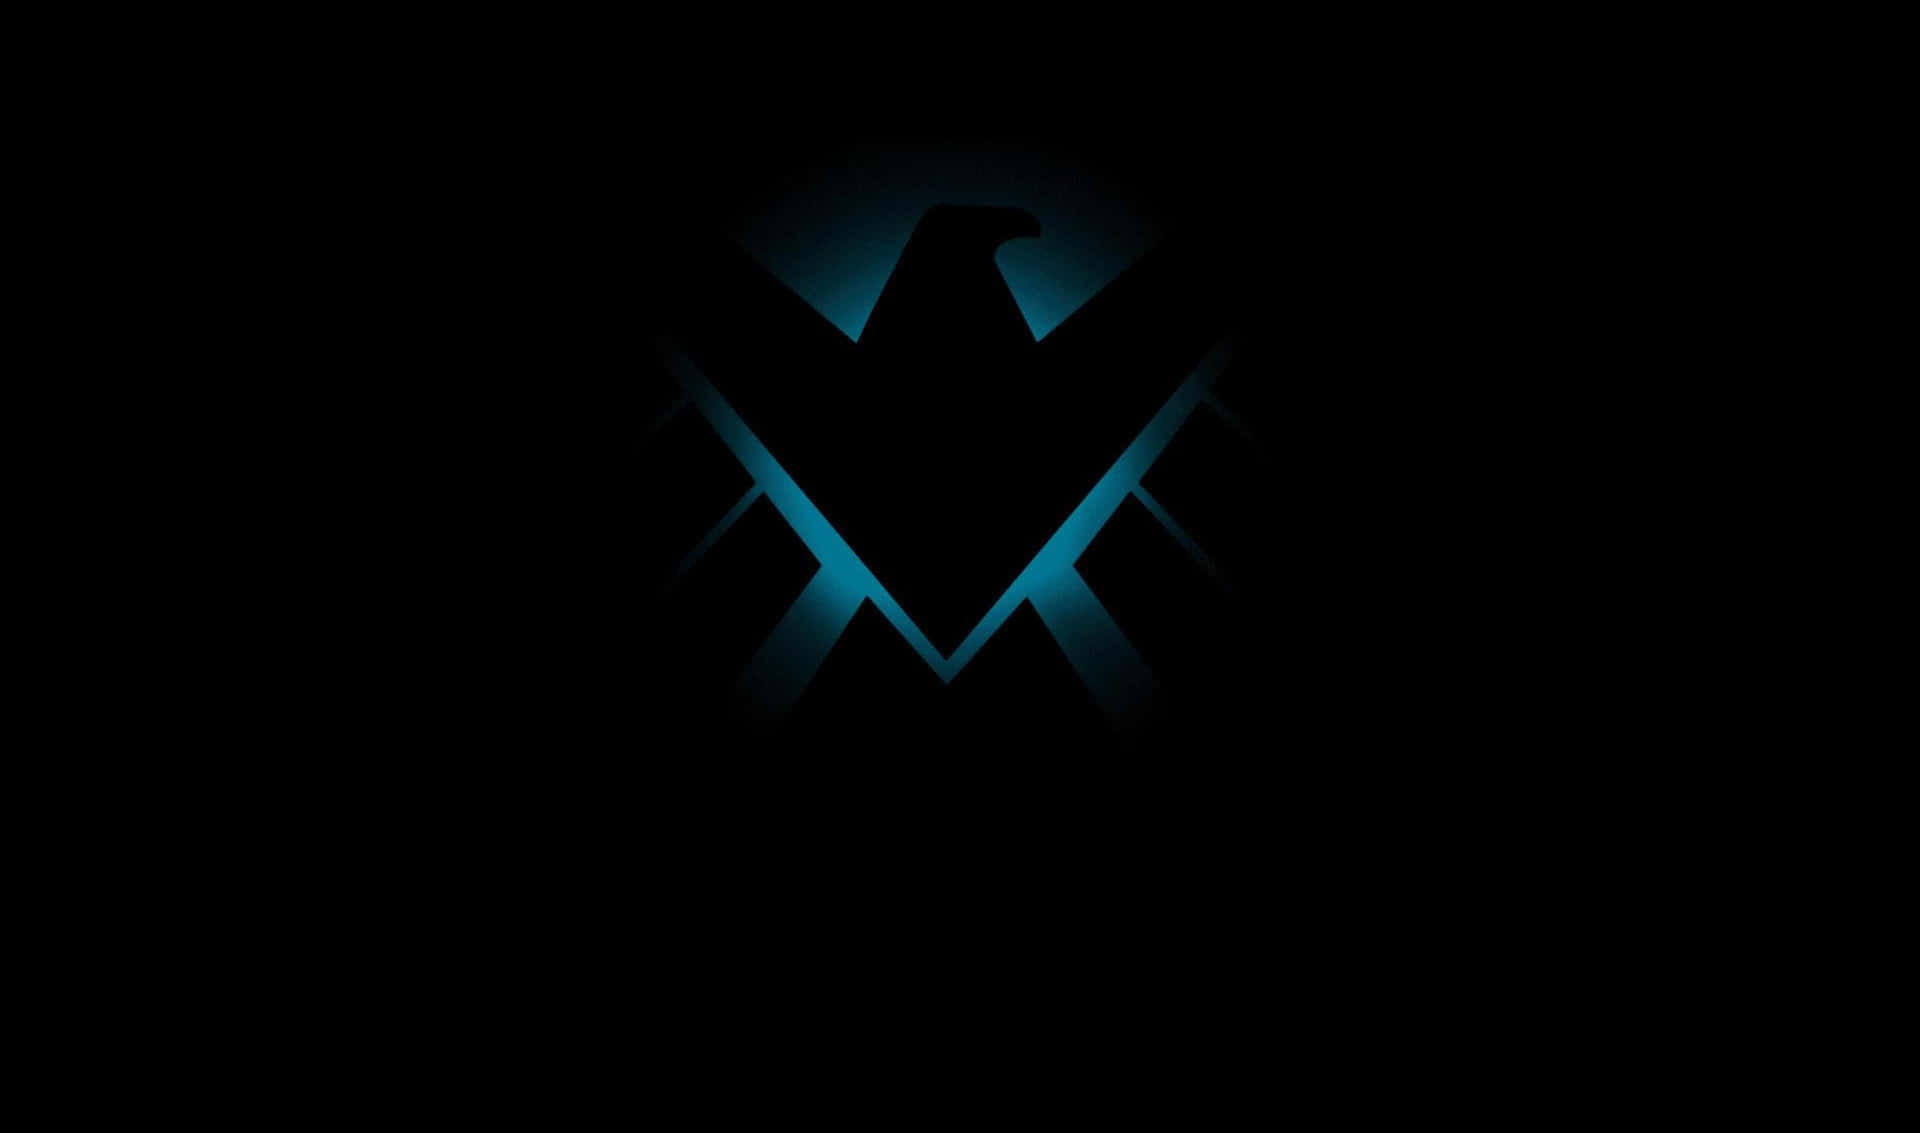 Nightwing Logo 2440x1440 Amoled Background